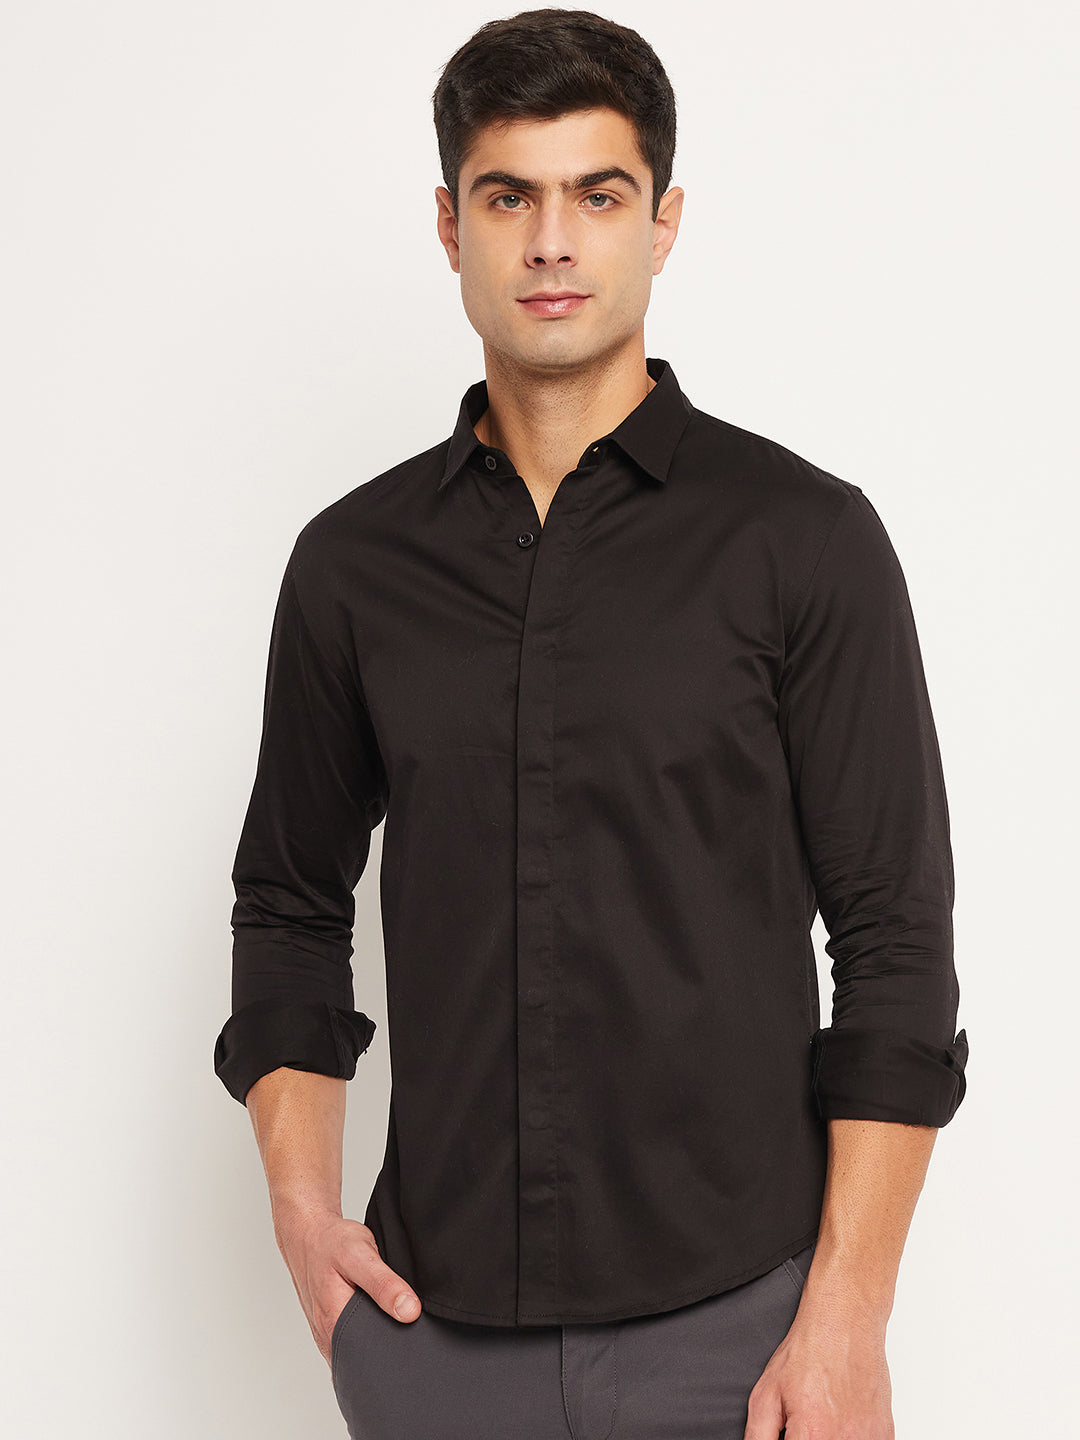 Men's Black Shirt, front side